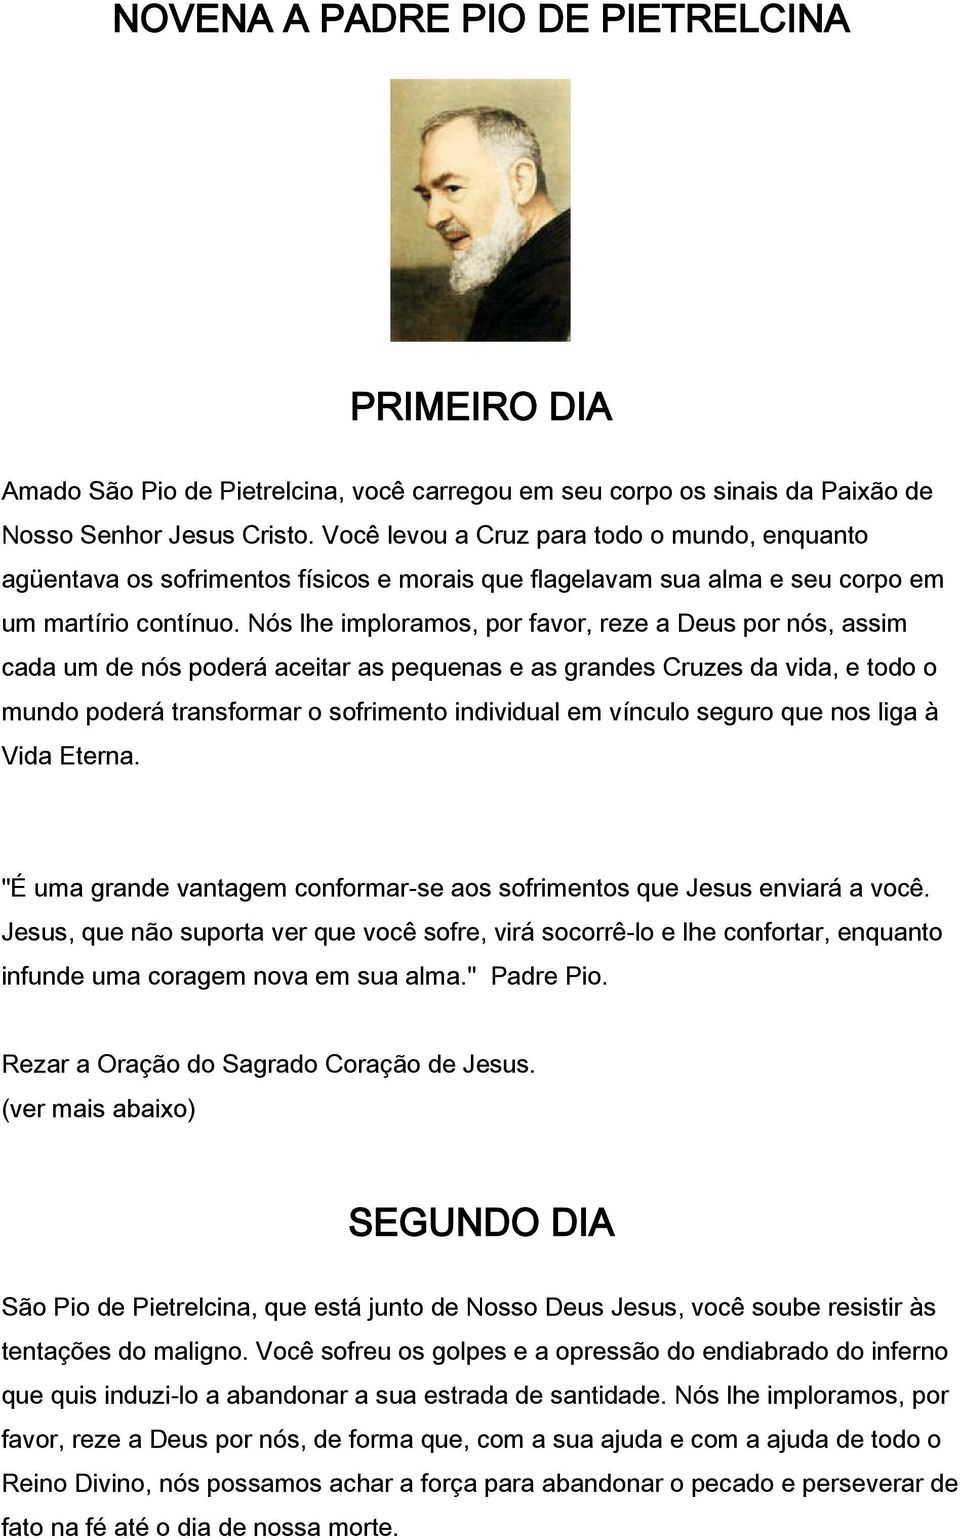 NOVENA A PADRE PIO DE PIETRELCINA PRIMEIRO DIA - PDF Download grátis